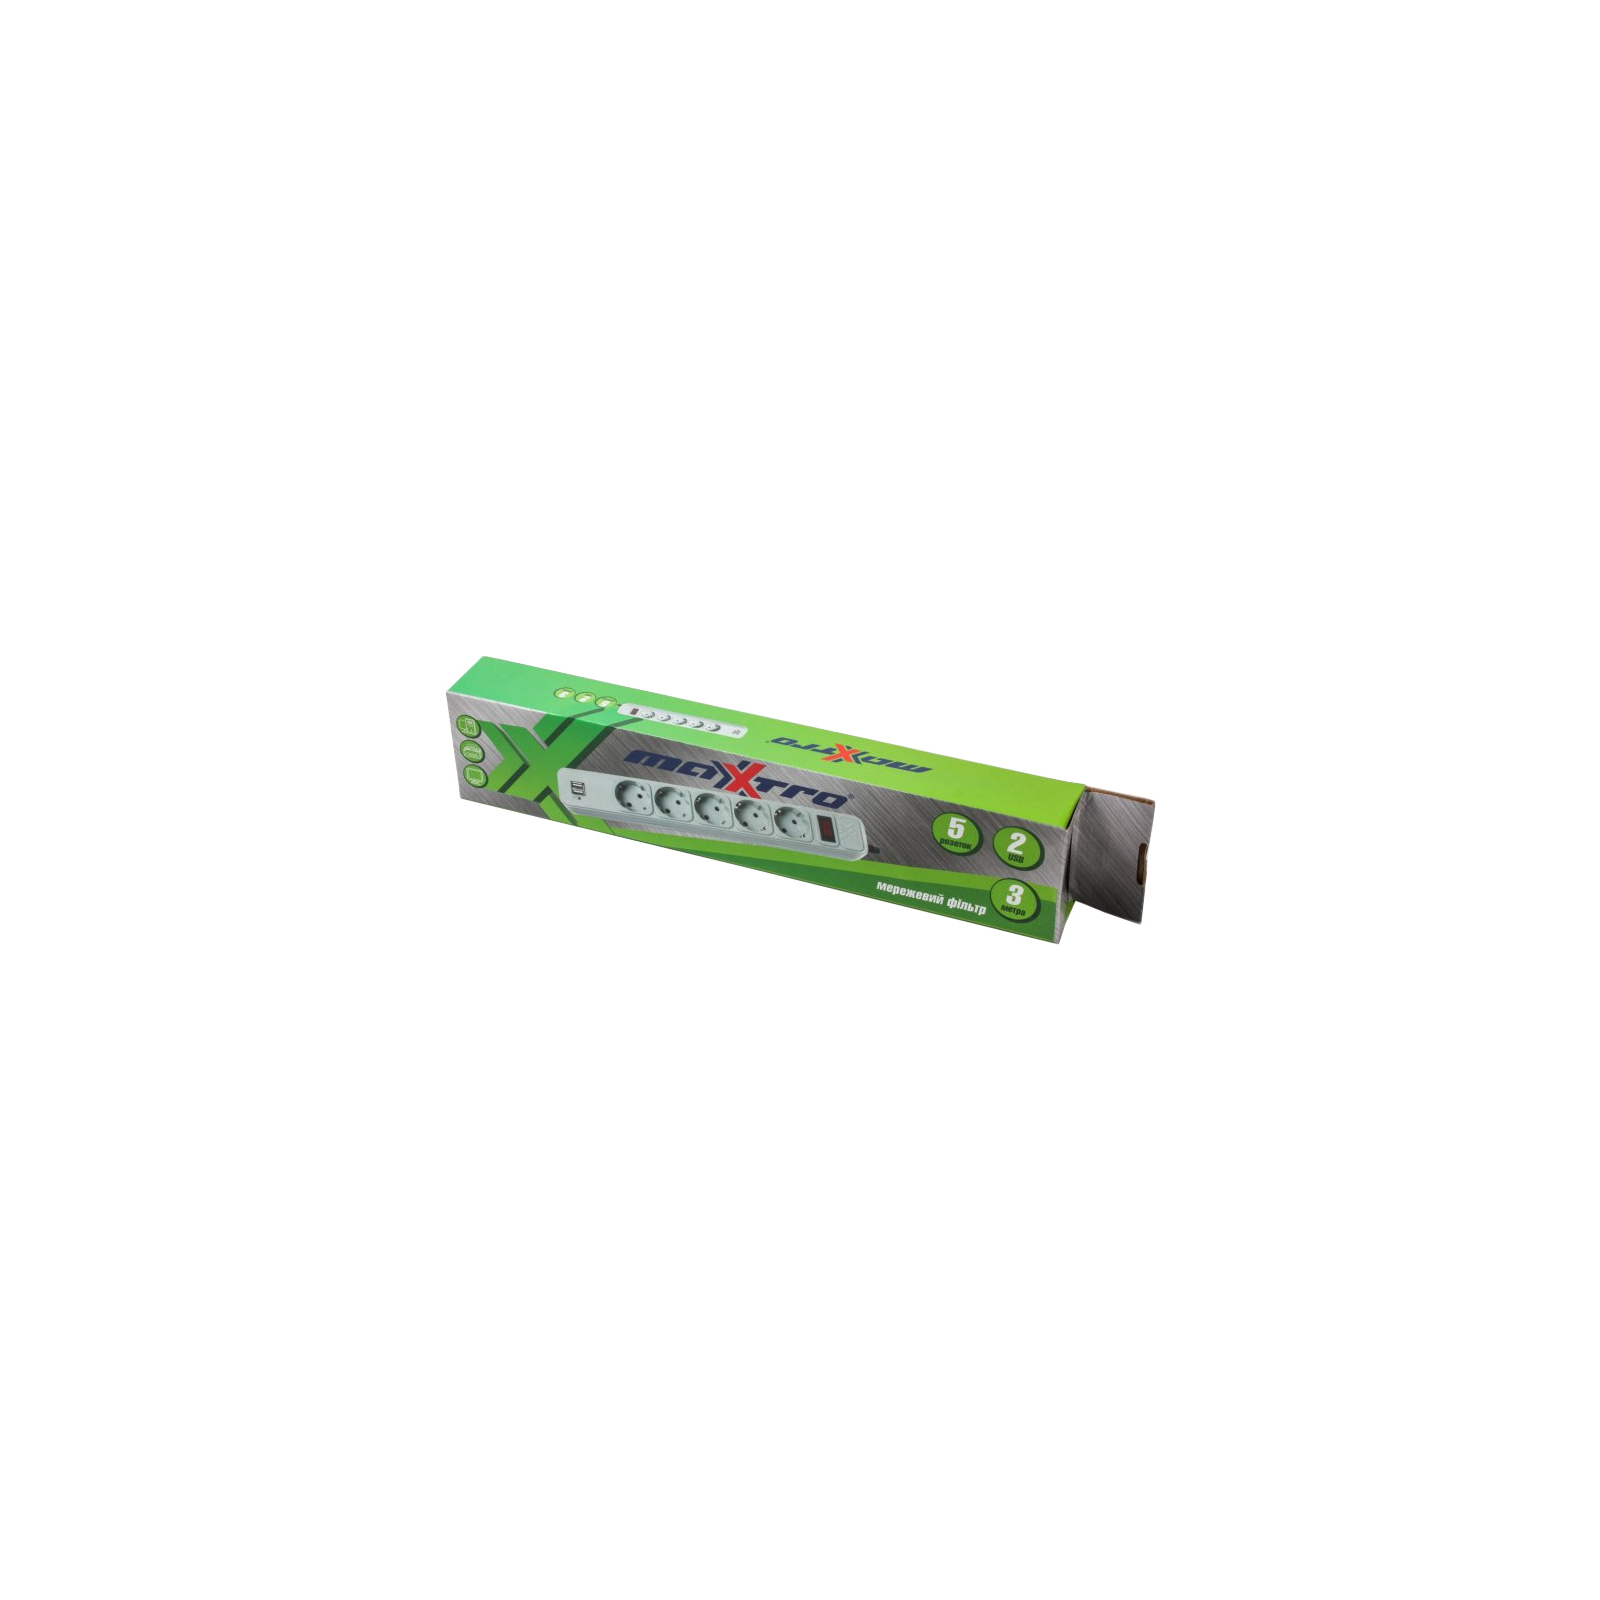 Мережевий фільтр живлення Maxxtro PWE-05K-3, серый, 3 м кабель, 5 розеток, USB зарядка 2А (PWE-05K-3) зображення 2